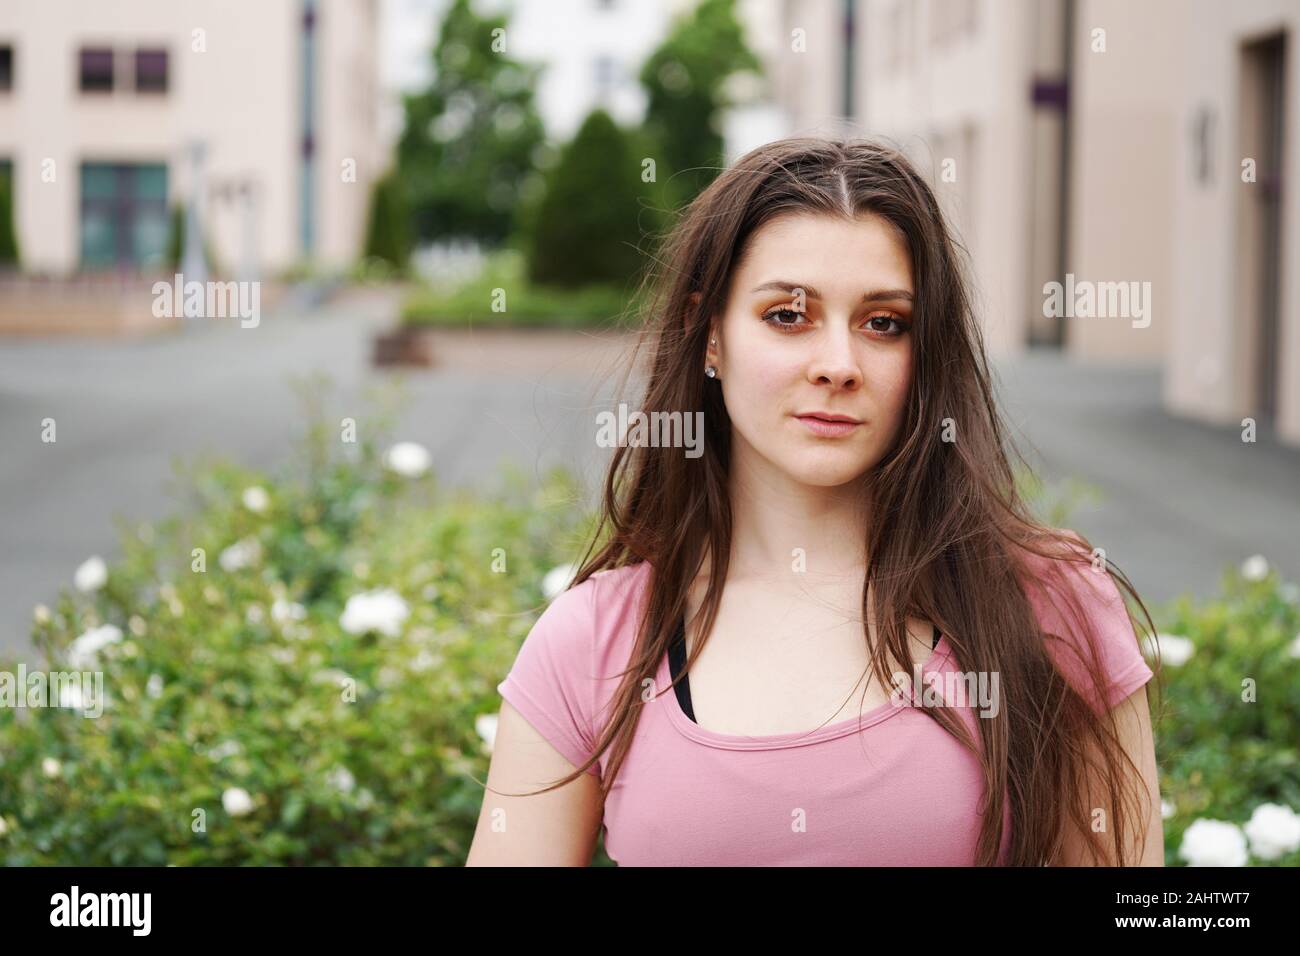 Ritratto di strada di una grave giovane donna con lunghi capelli bruna all'aperto. Bella giovane femmina in un contesto urbano con spazio di copia Foto Stock